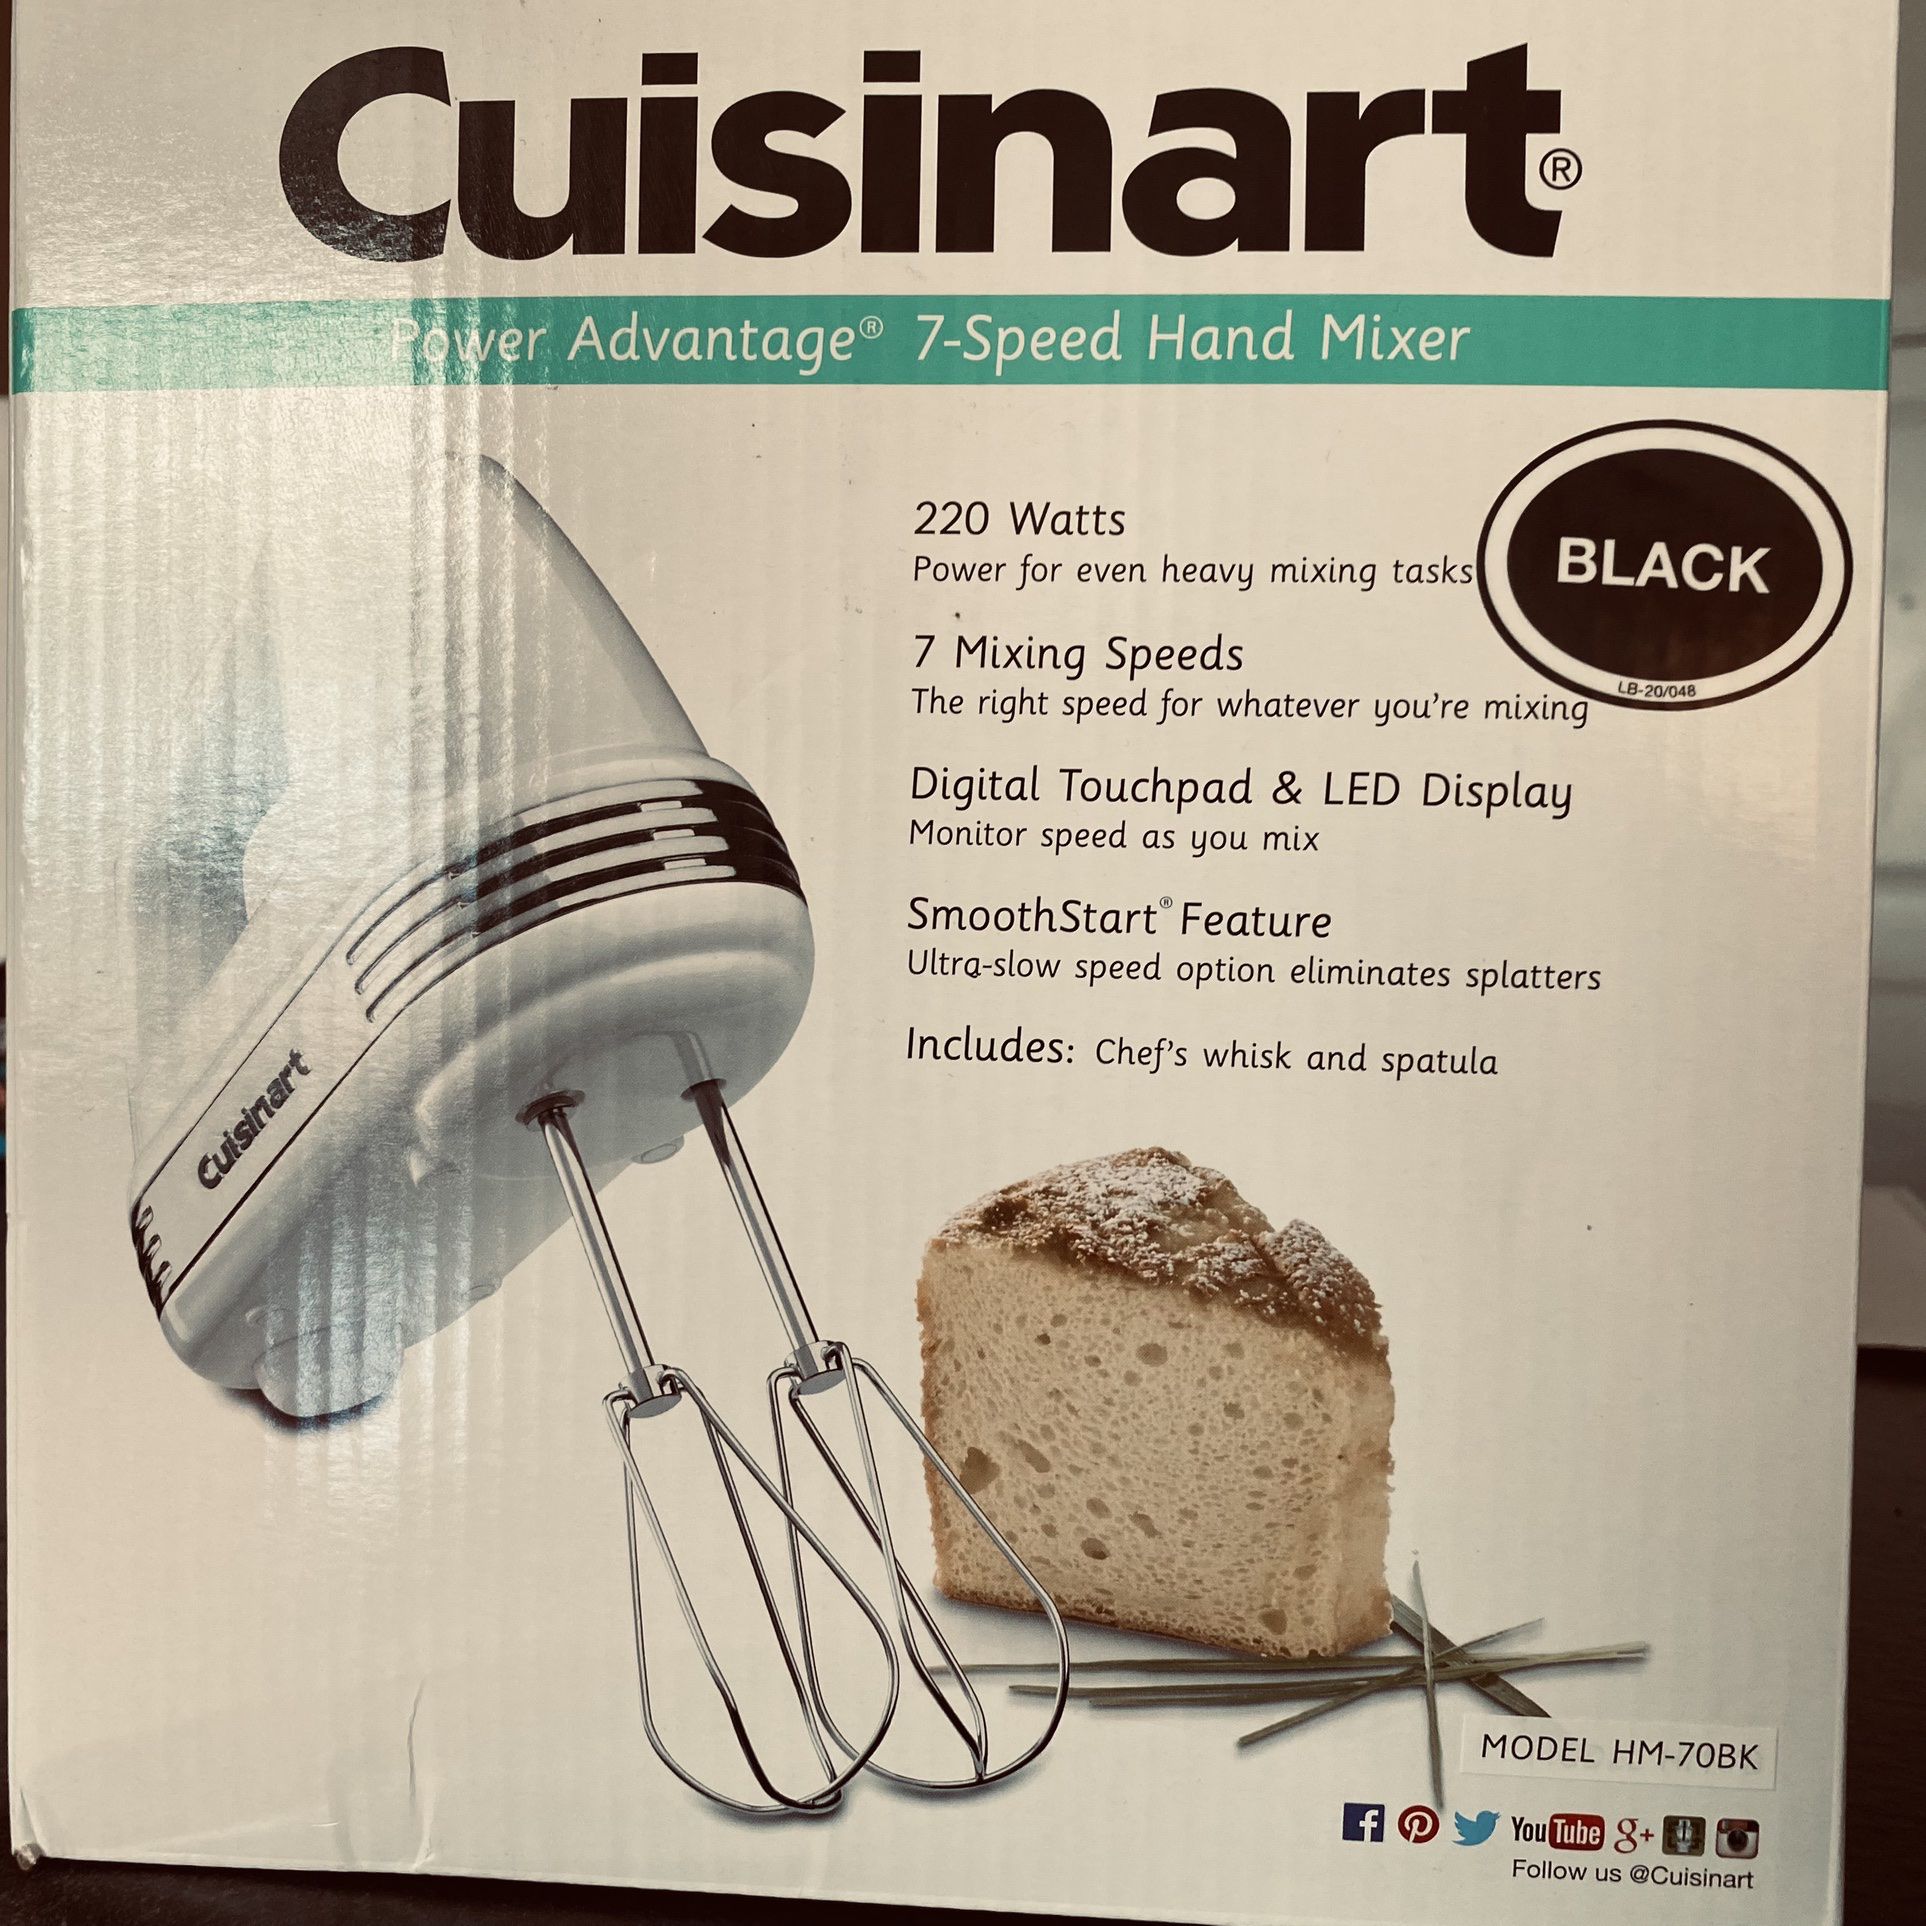 Cuisinart Power Advantage 7-Speed 220-Watt Hand Mixer 